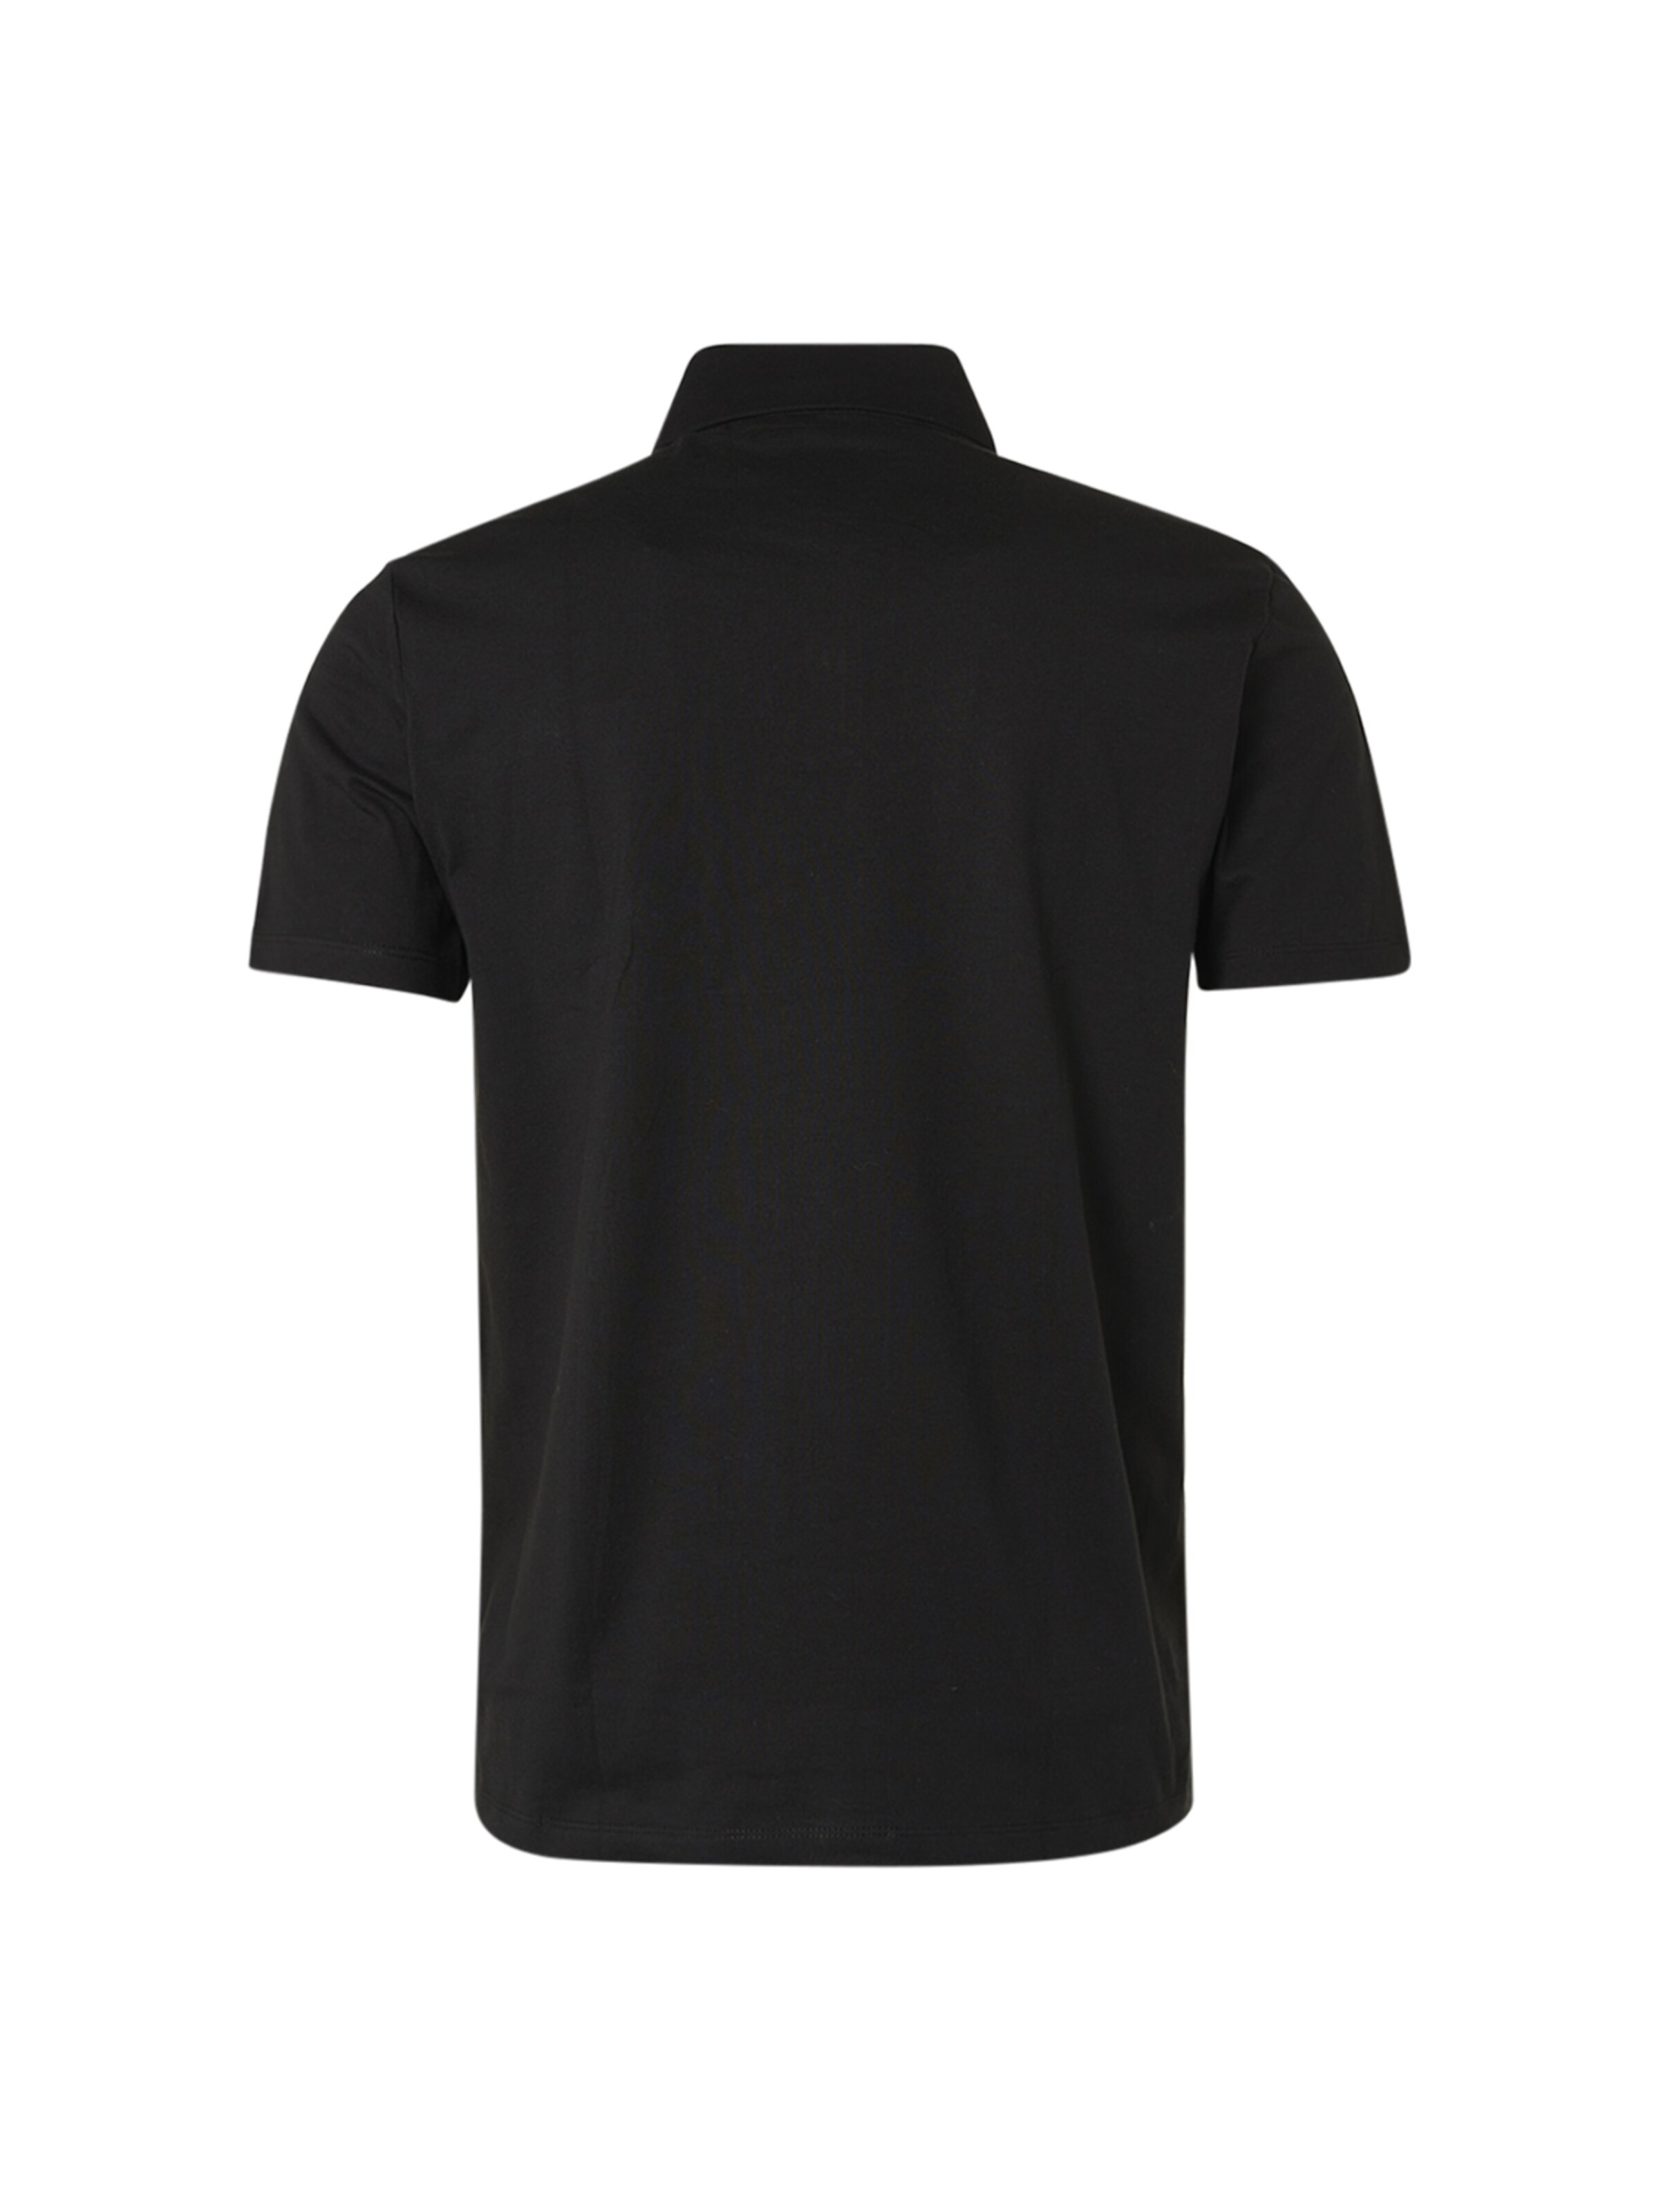 Männer Shirts No Excess Shirt in Schwarz - JR87129